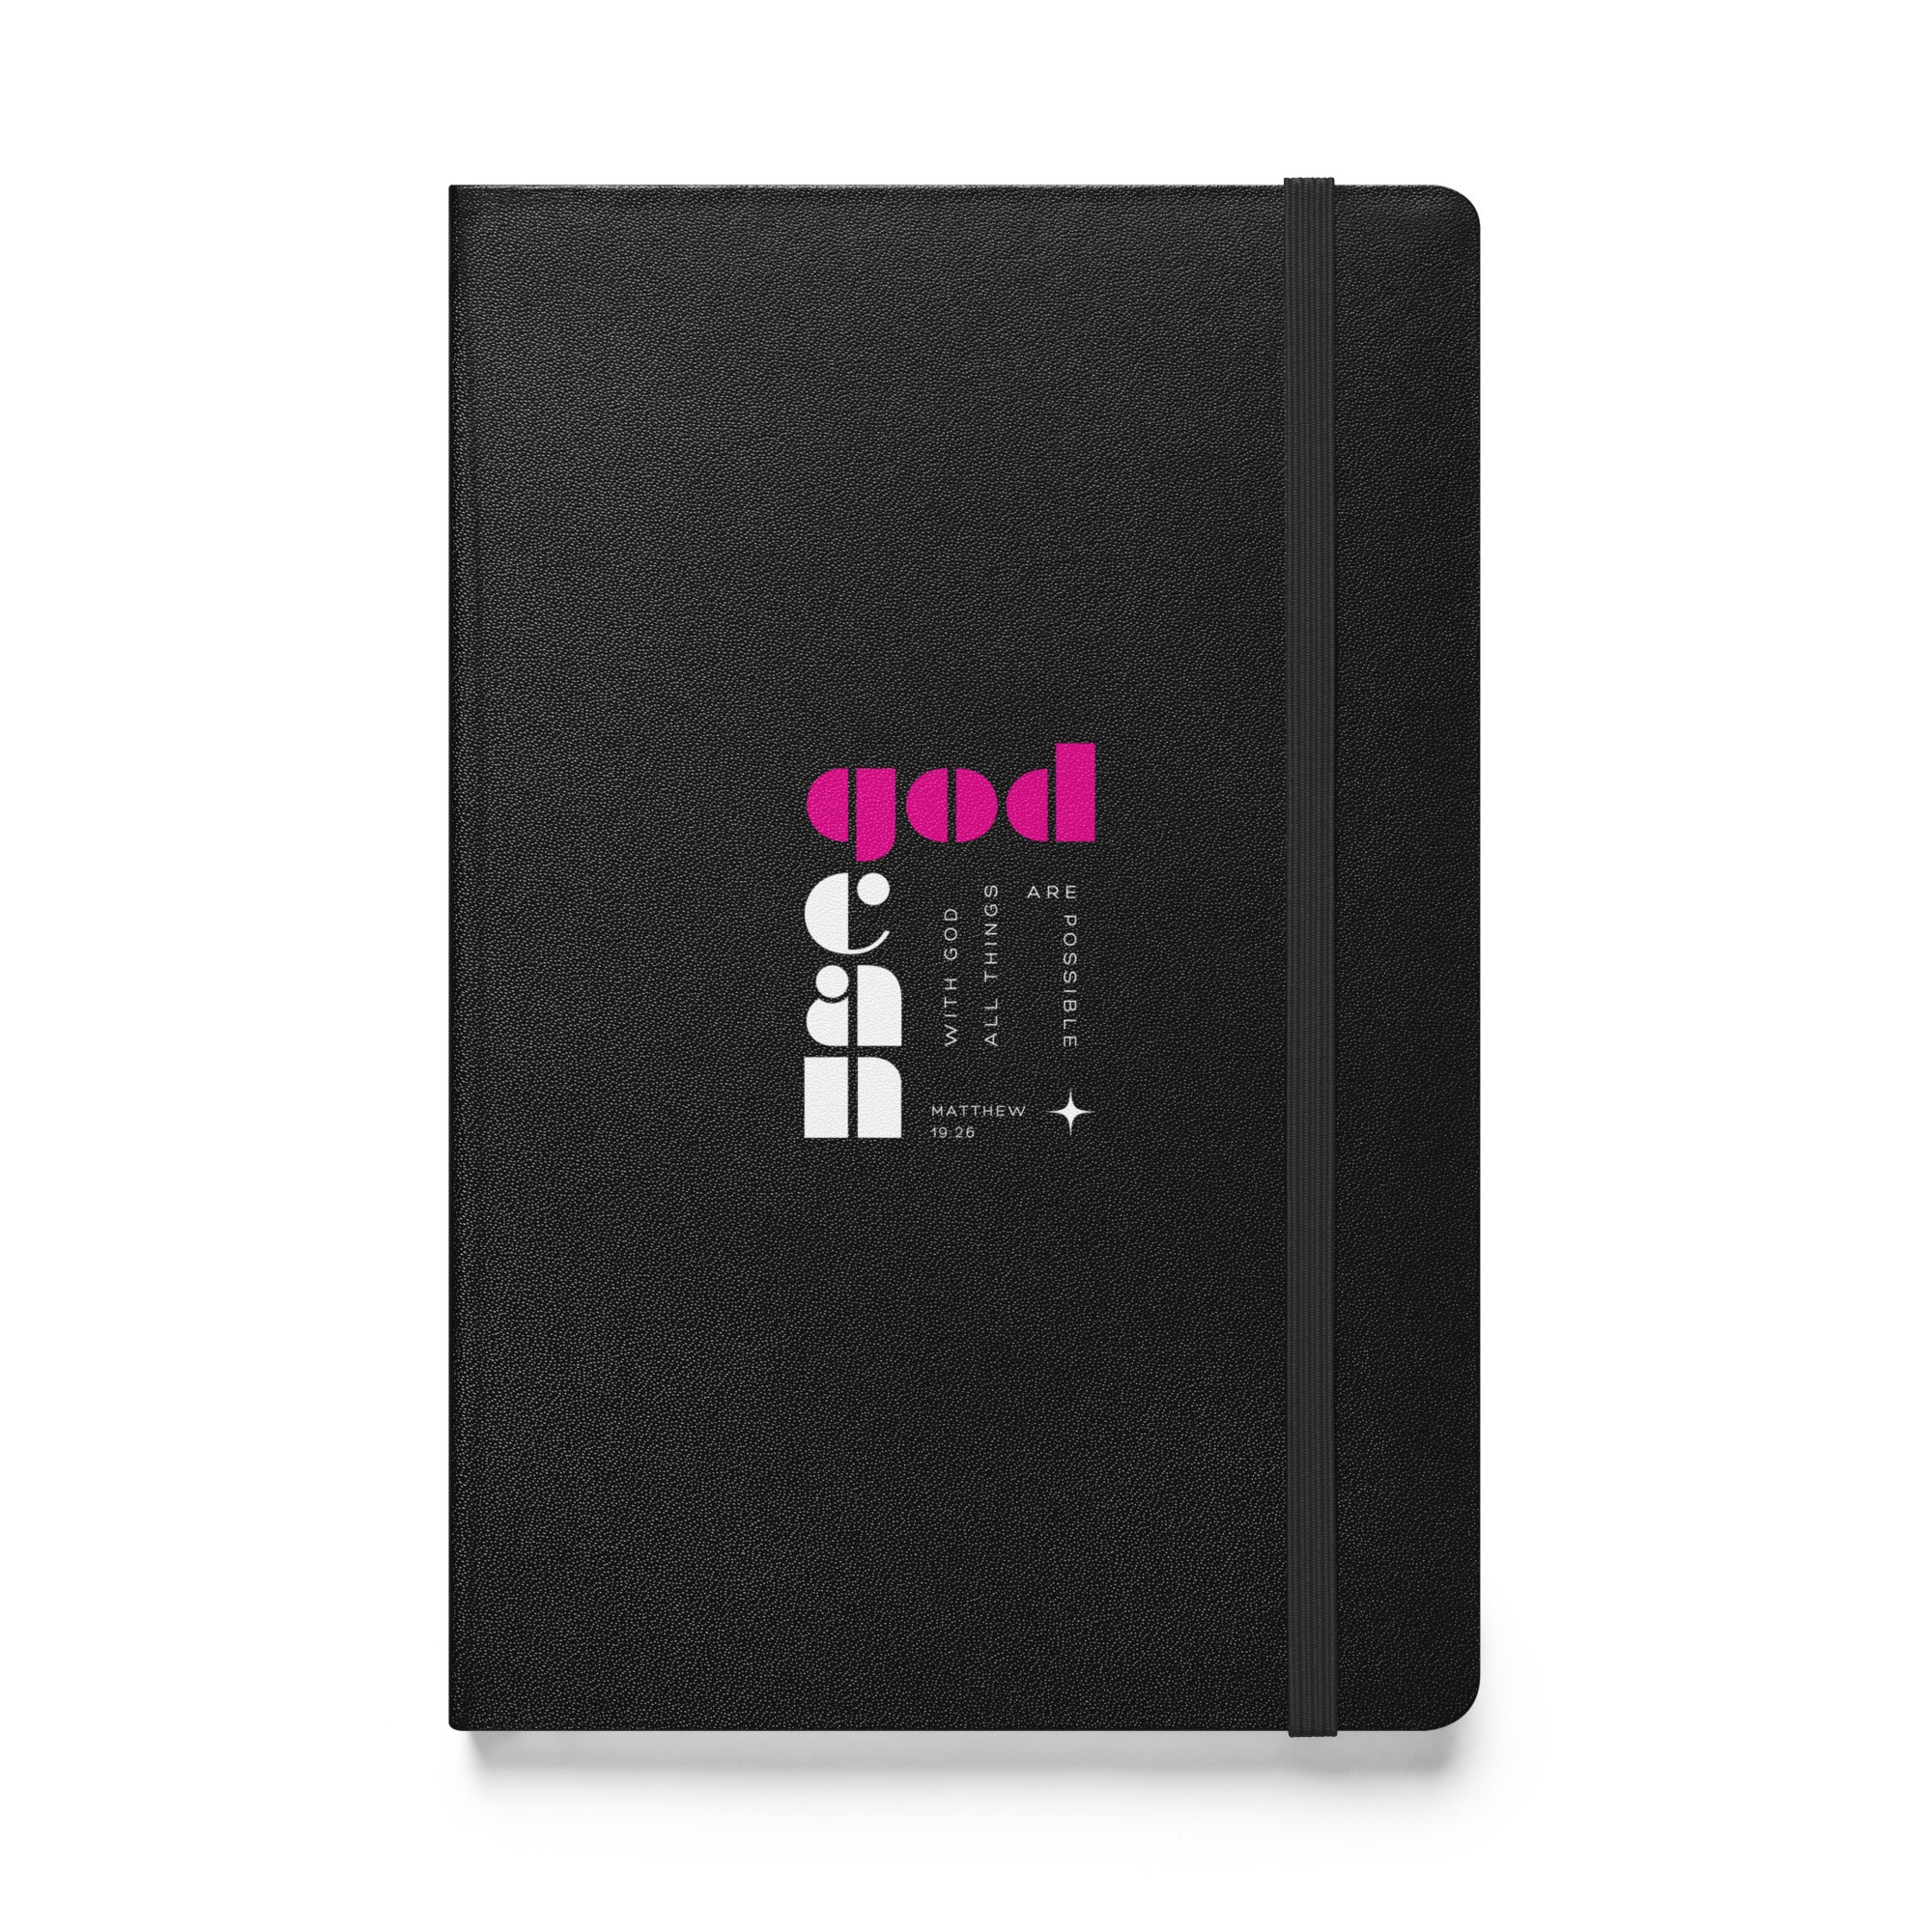 Hardcover bound notebook - Matthew 19:26